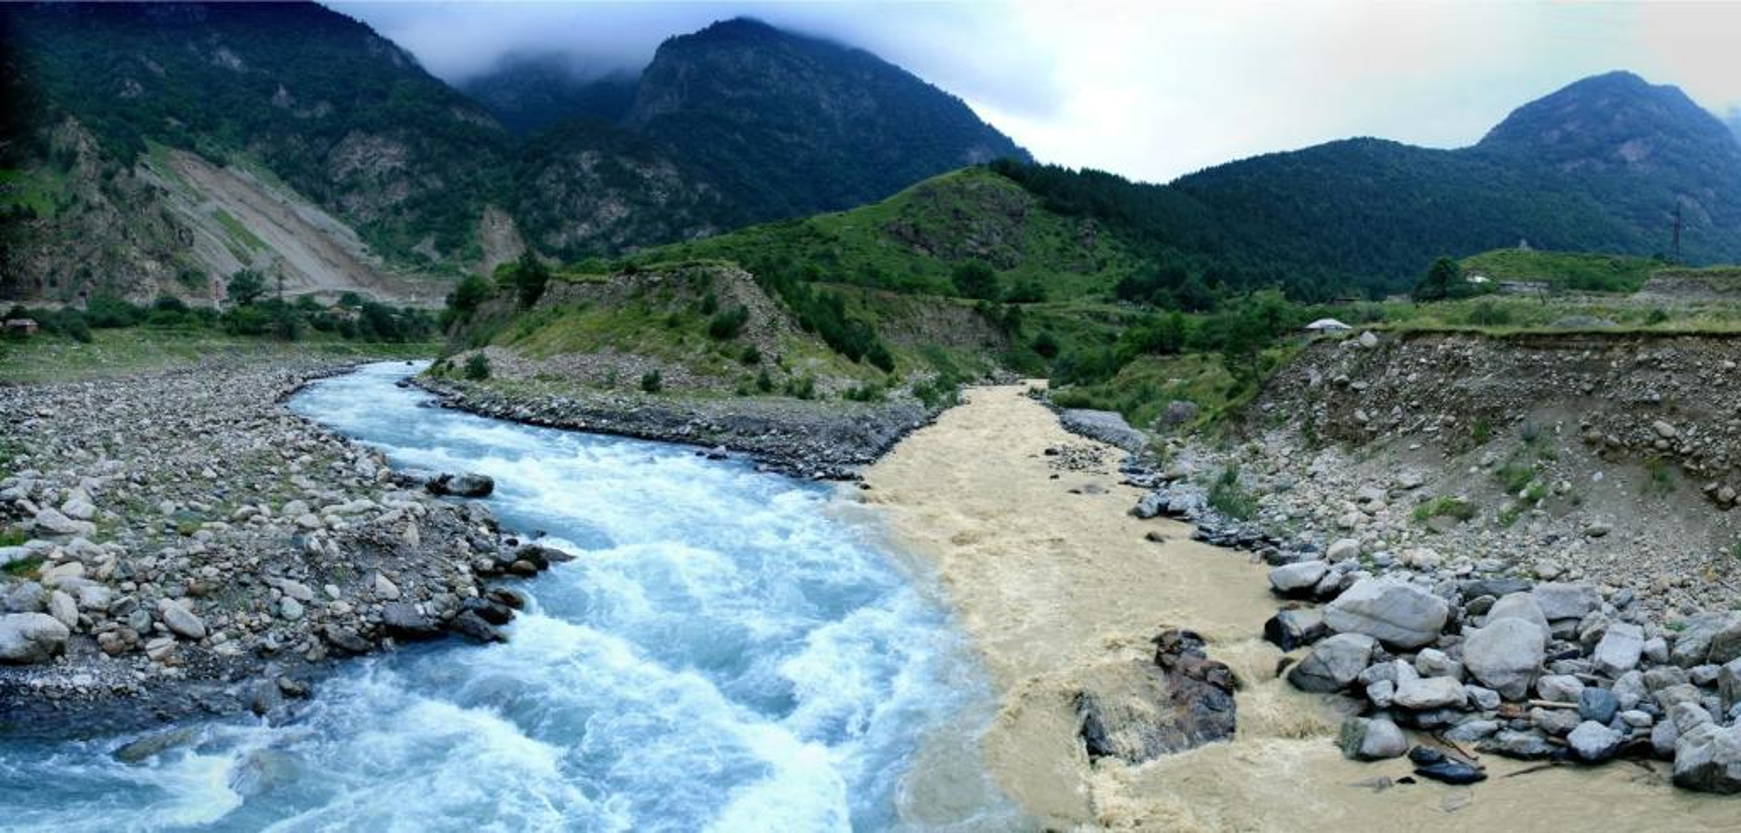 Бекрумс рек. Река Ардон в Северной Осетии. Ардон (река) реки Северной Осетии. Река ЦЕЙДОН Северная Осетия. Река Терек Владикавказ.